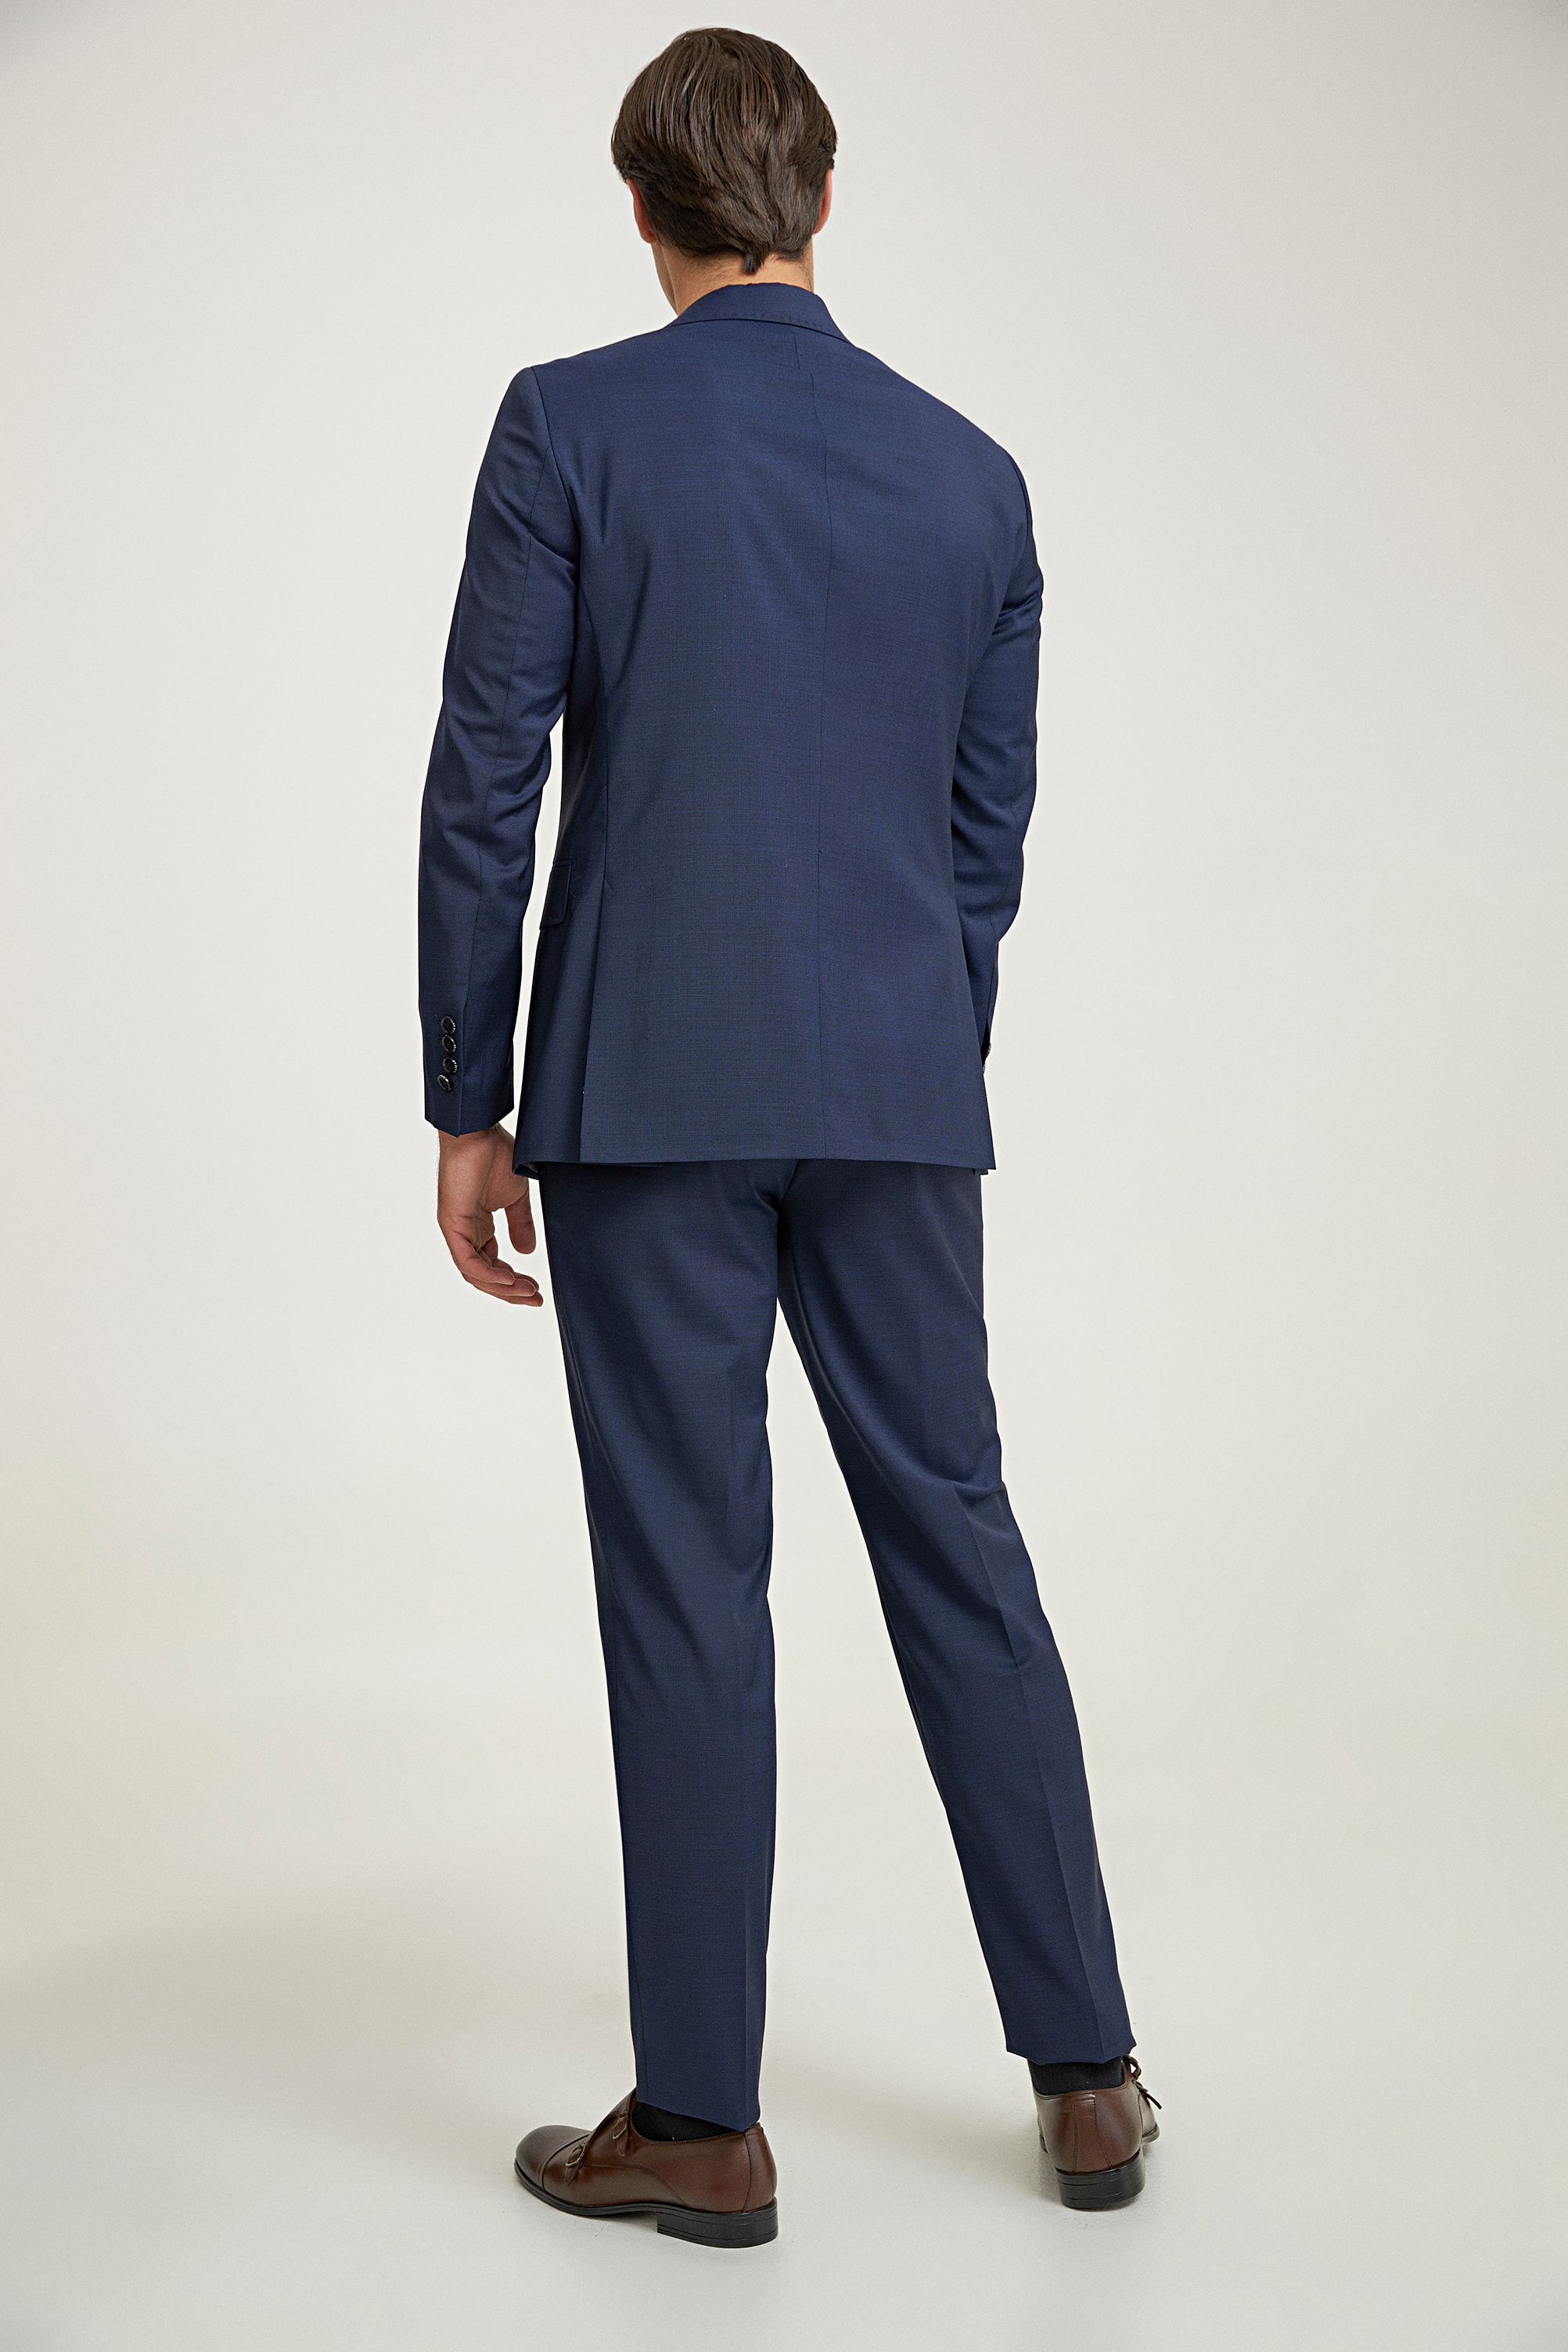 Damat Tween Damat Slim Fit Lacivert Düz %100 Yün Takim Elbise. 4